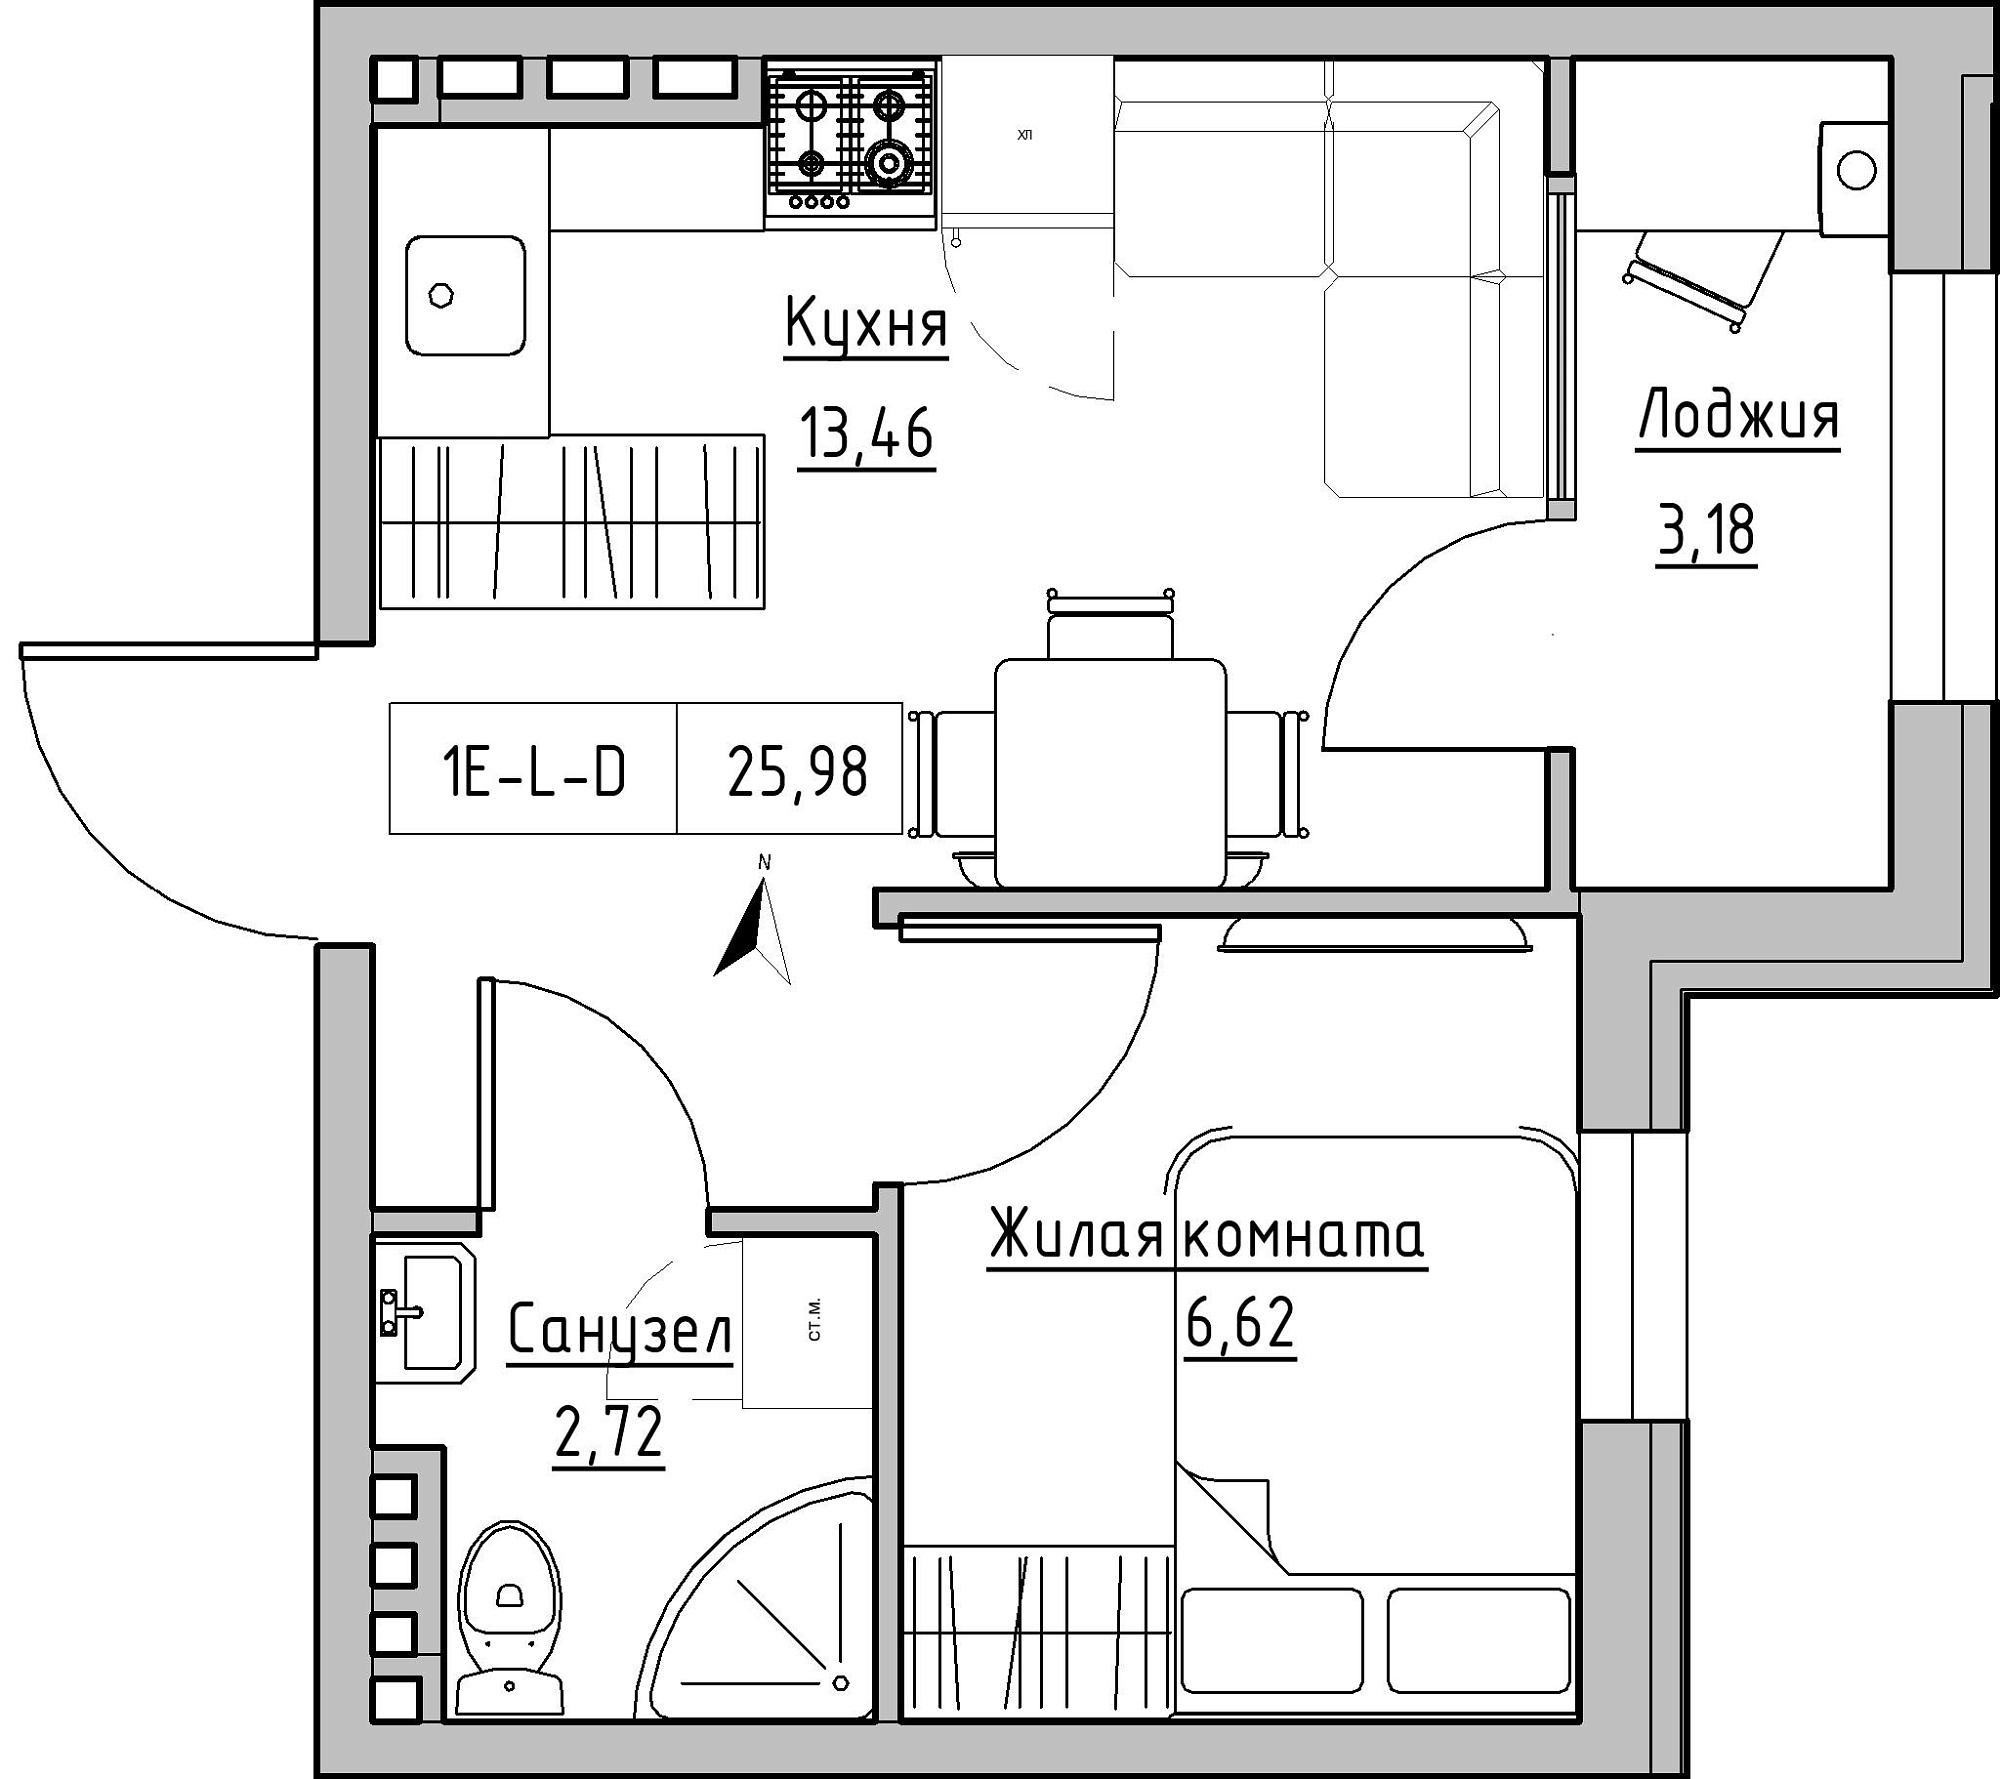 Планування 1-к квартира площею 25.98м2, KS-024-03/0017.